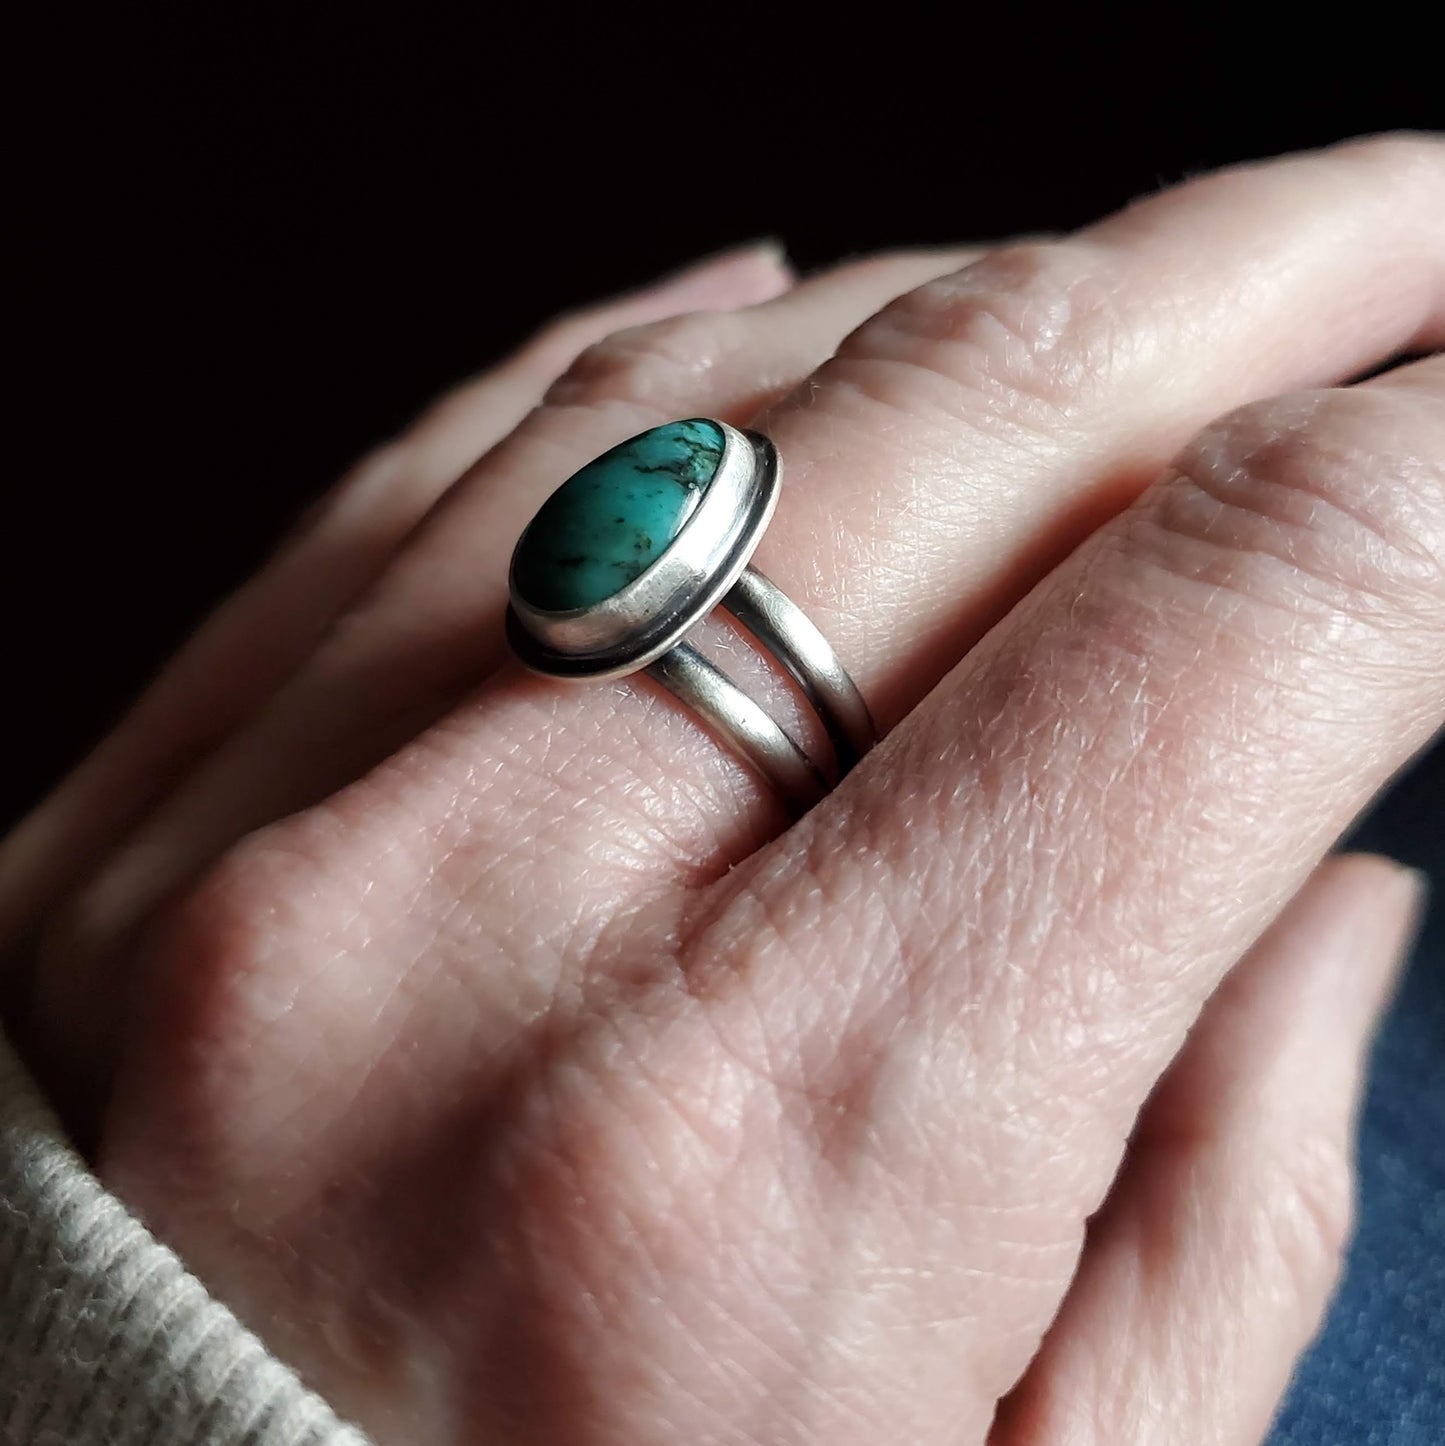 Kingman Turquoise Ring - Size 7